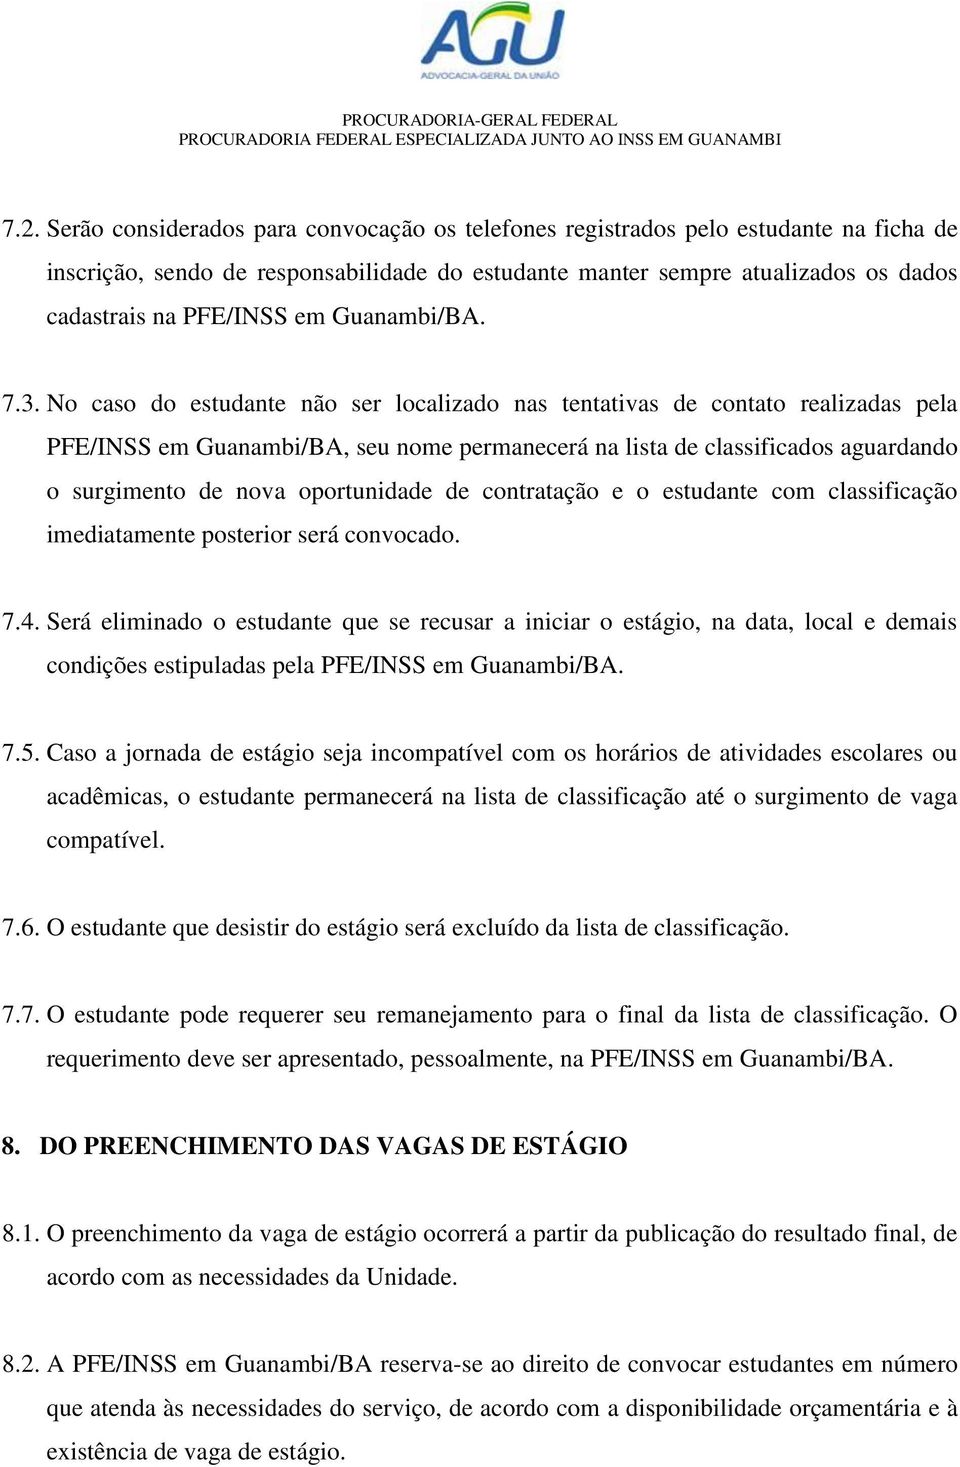 No caso do estudante não ser localizado nas tentativas de contato realizadas pela PFE/INSS em Guanambi/BA, seu nome permanecerá na lista de classificados aguardando o surgimento de nova oportunidade